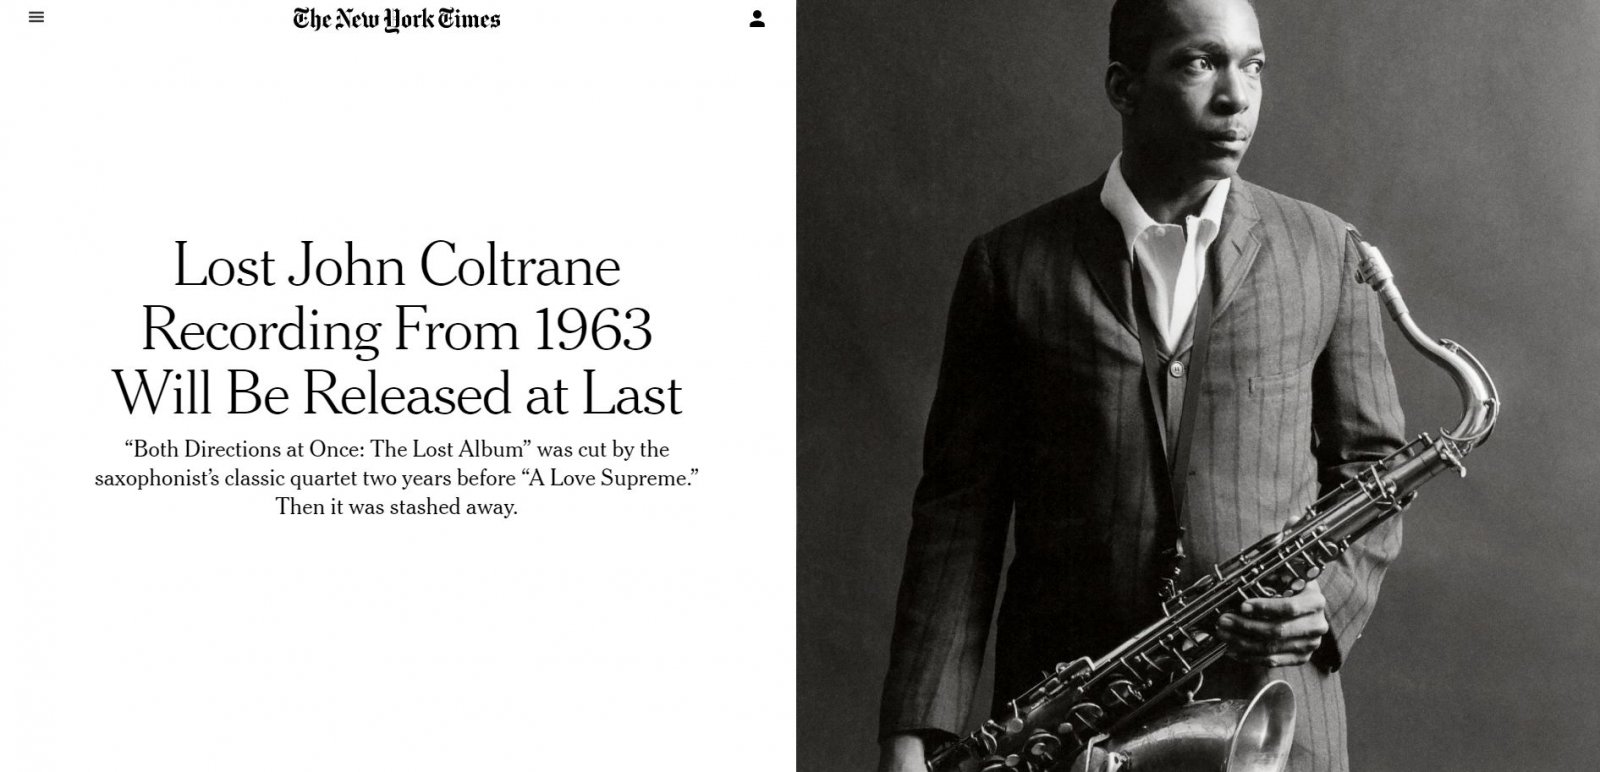 Il New York Times annuncia la pubblicazione dell'album perduto di John Coltrane